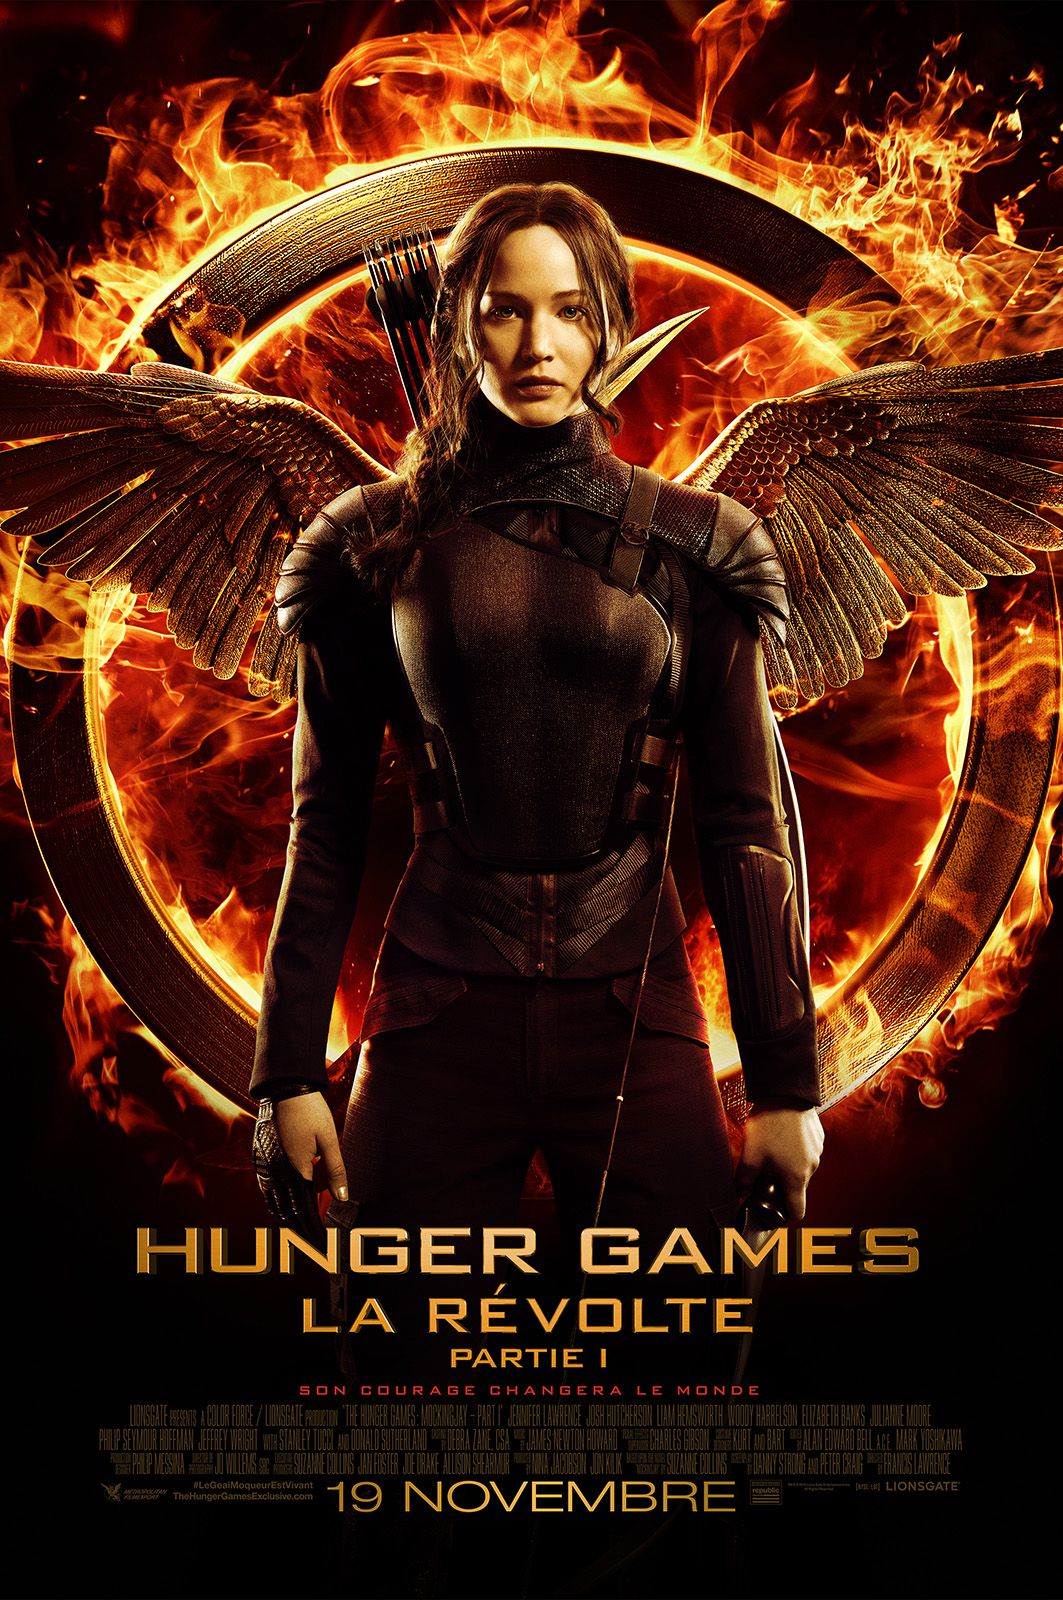 Hunger Games : La Révolte, partie 1 - Film (2014) streaming VF gratuit complet